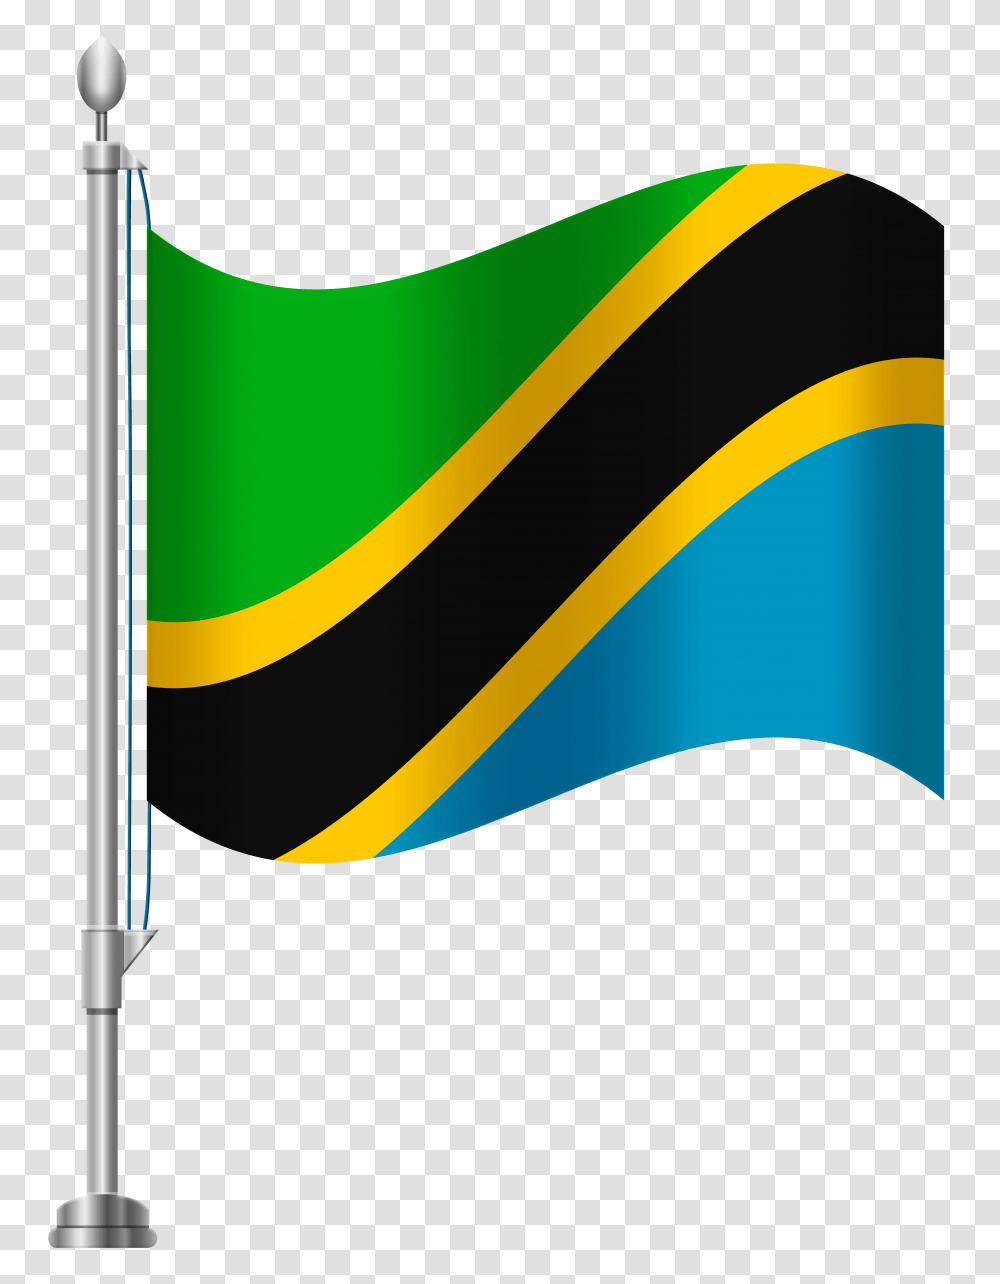 Tanzania Flag Clip Art, Logo, Trademark, Axe Transparent Png